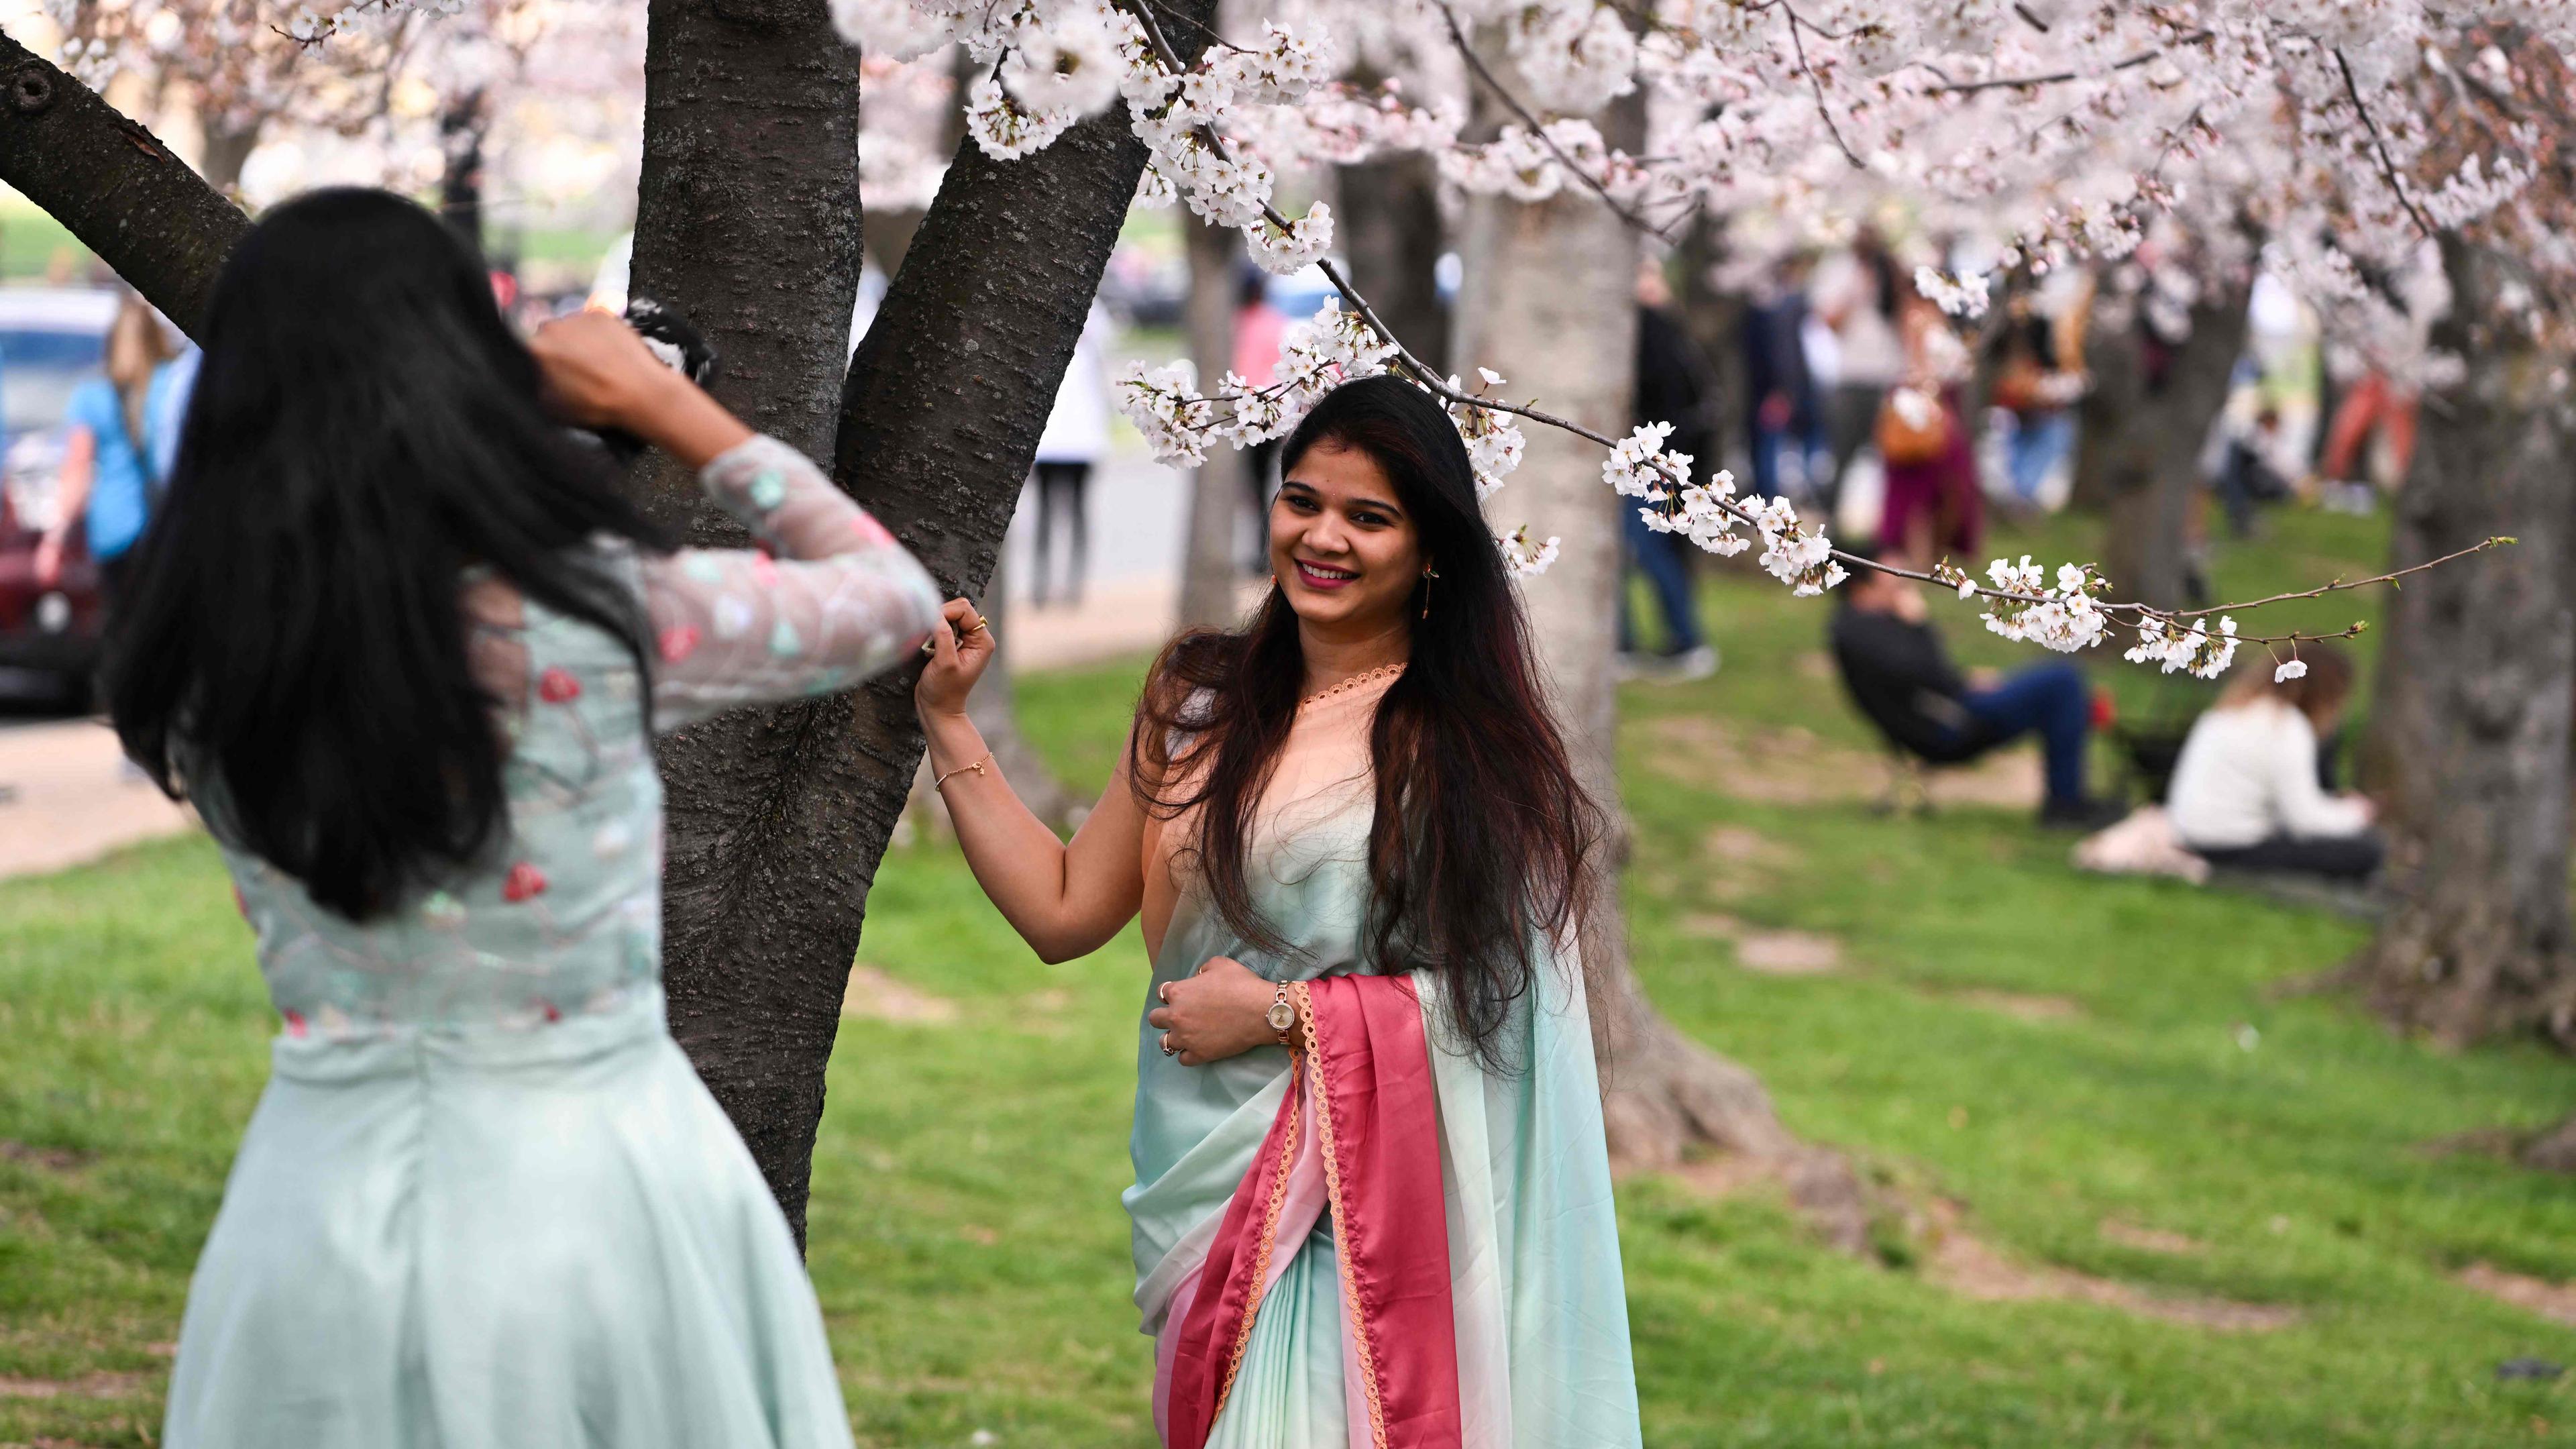 Eine Frau fotografiert ihre Freundin unter blühenden Kirschbäumen in Washington, DC.